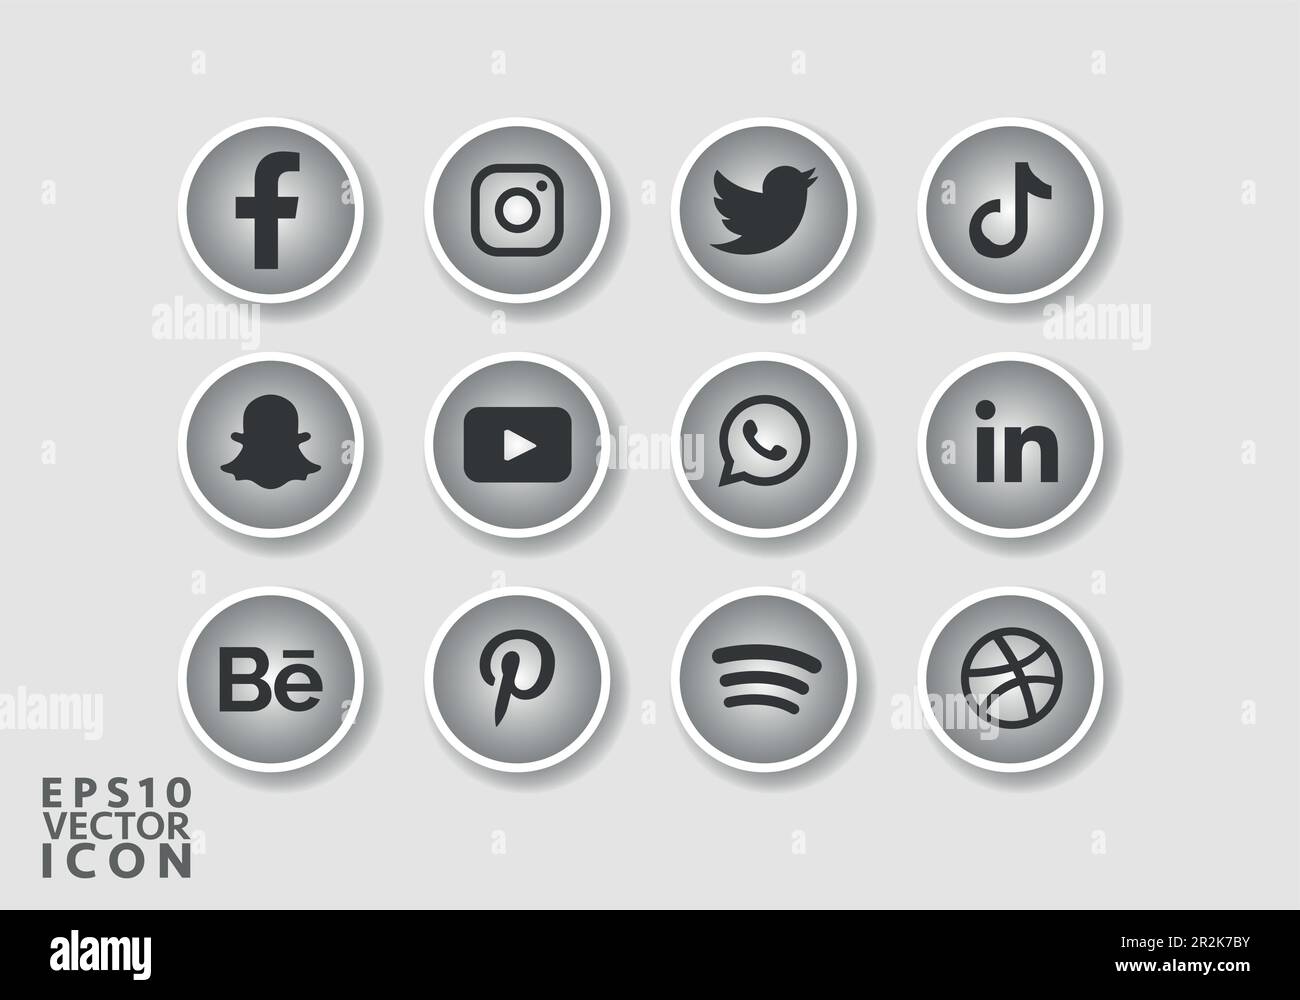 Set of popular social media icons Social media icons pack Social Media logos pack Stock Vector